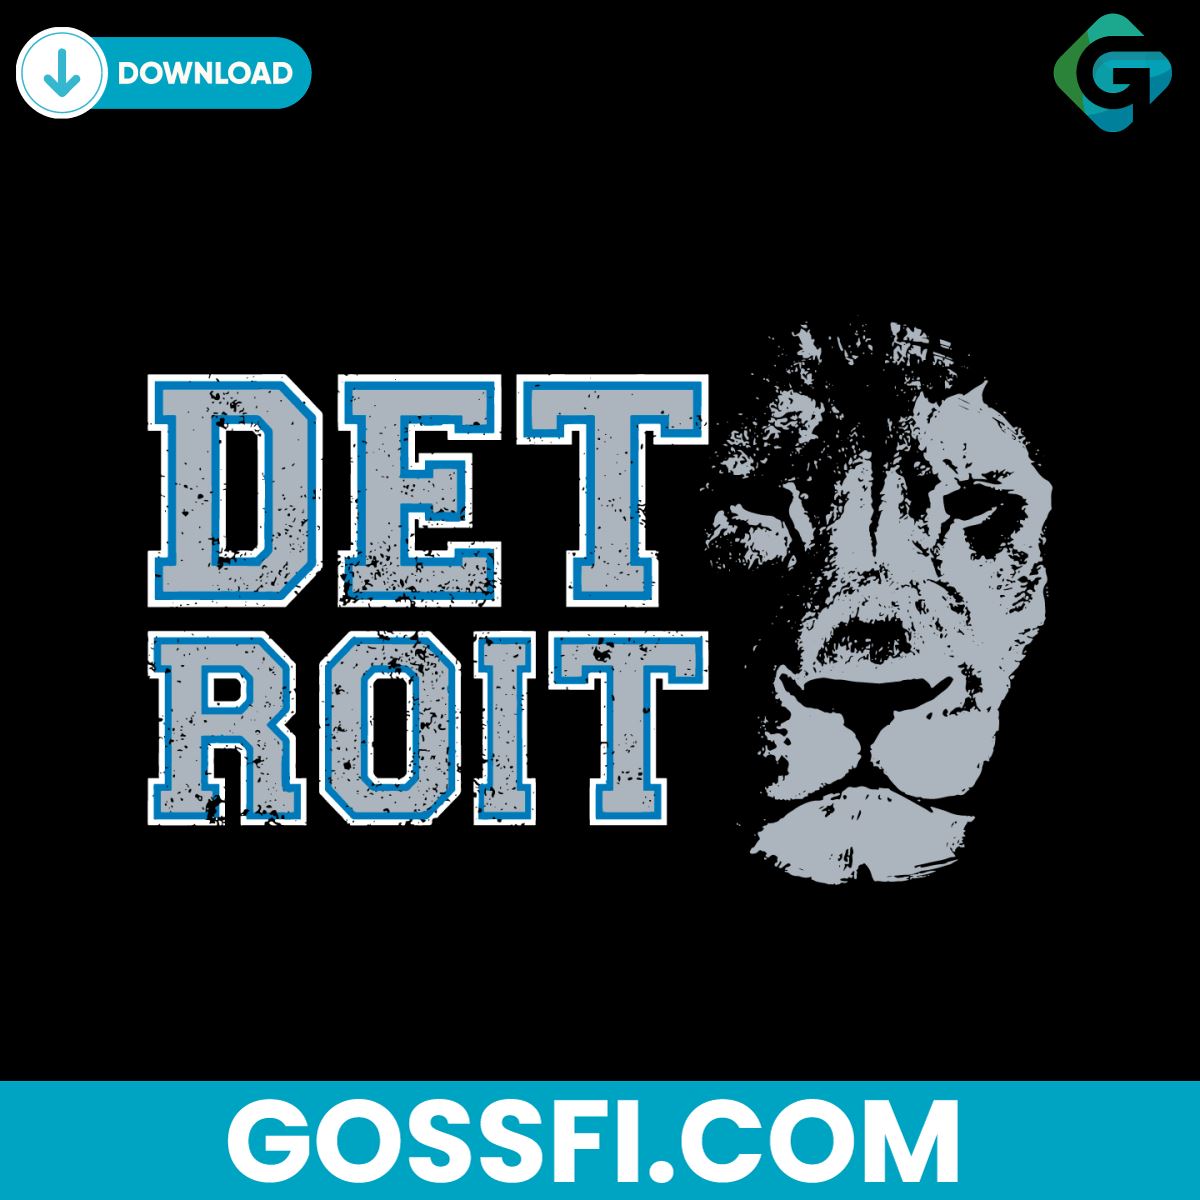 detroit-lions-football-nfl-svg-digital-download